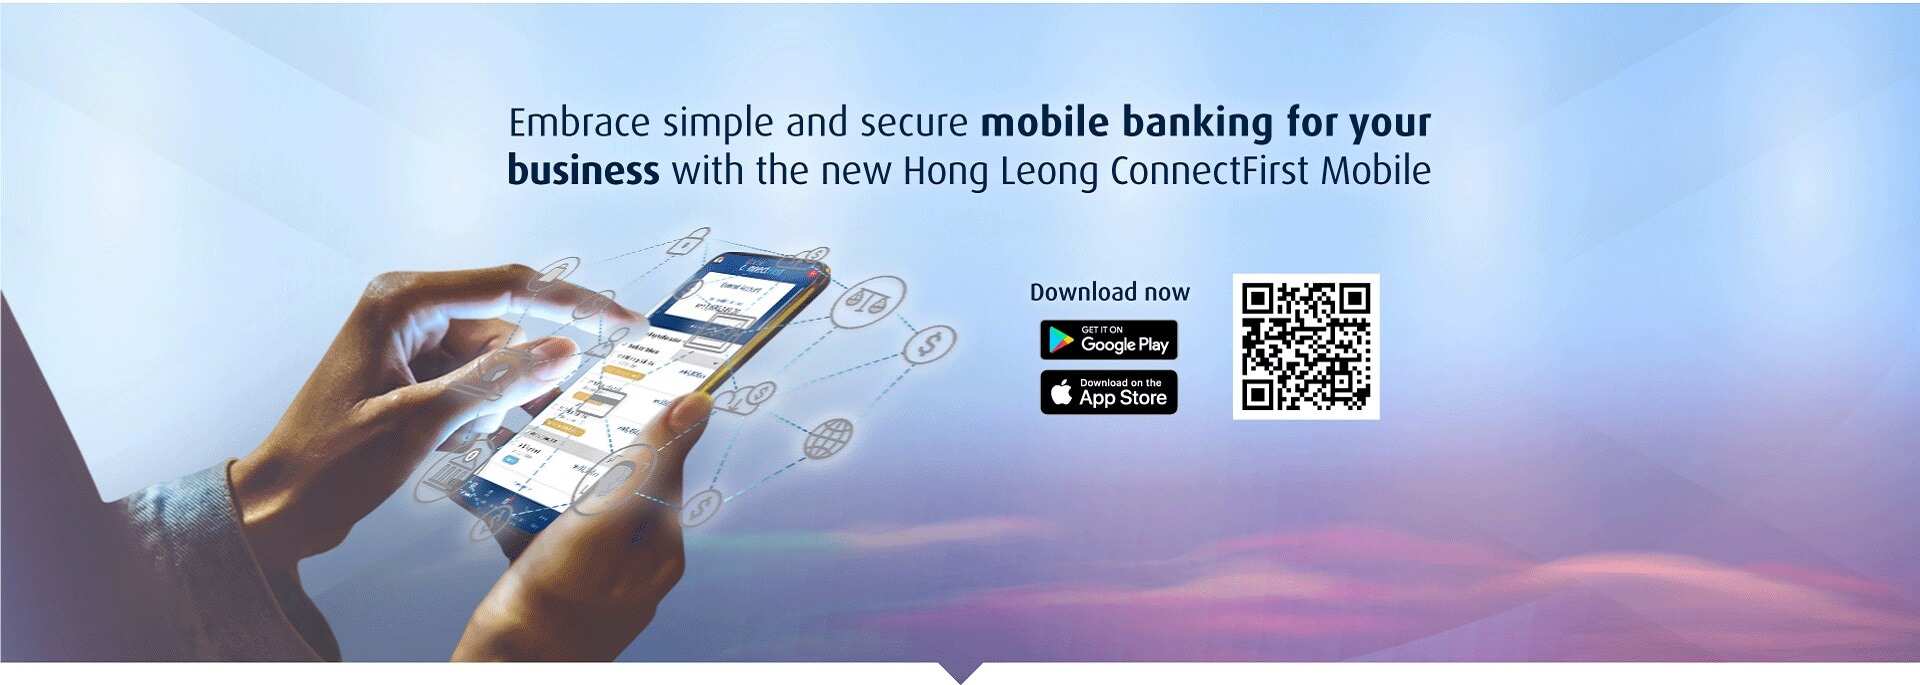 Hong Leong ConnectFirst Mobile - Hong Leong Bank